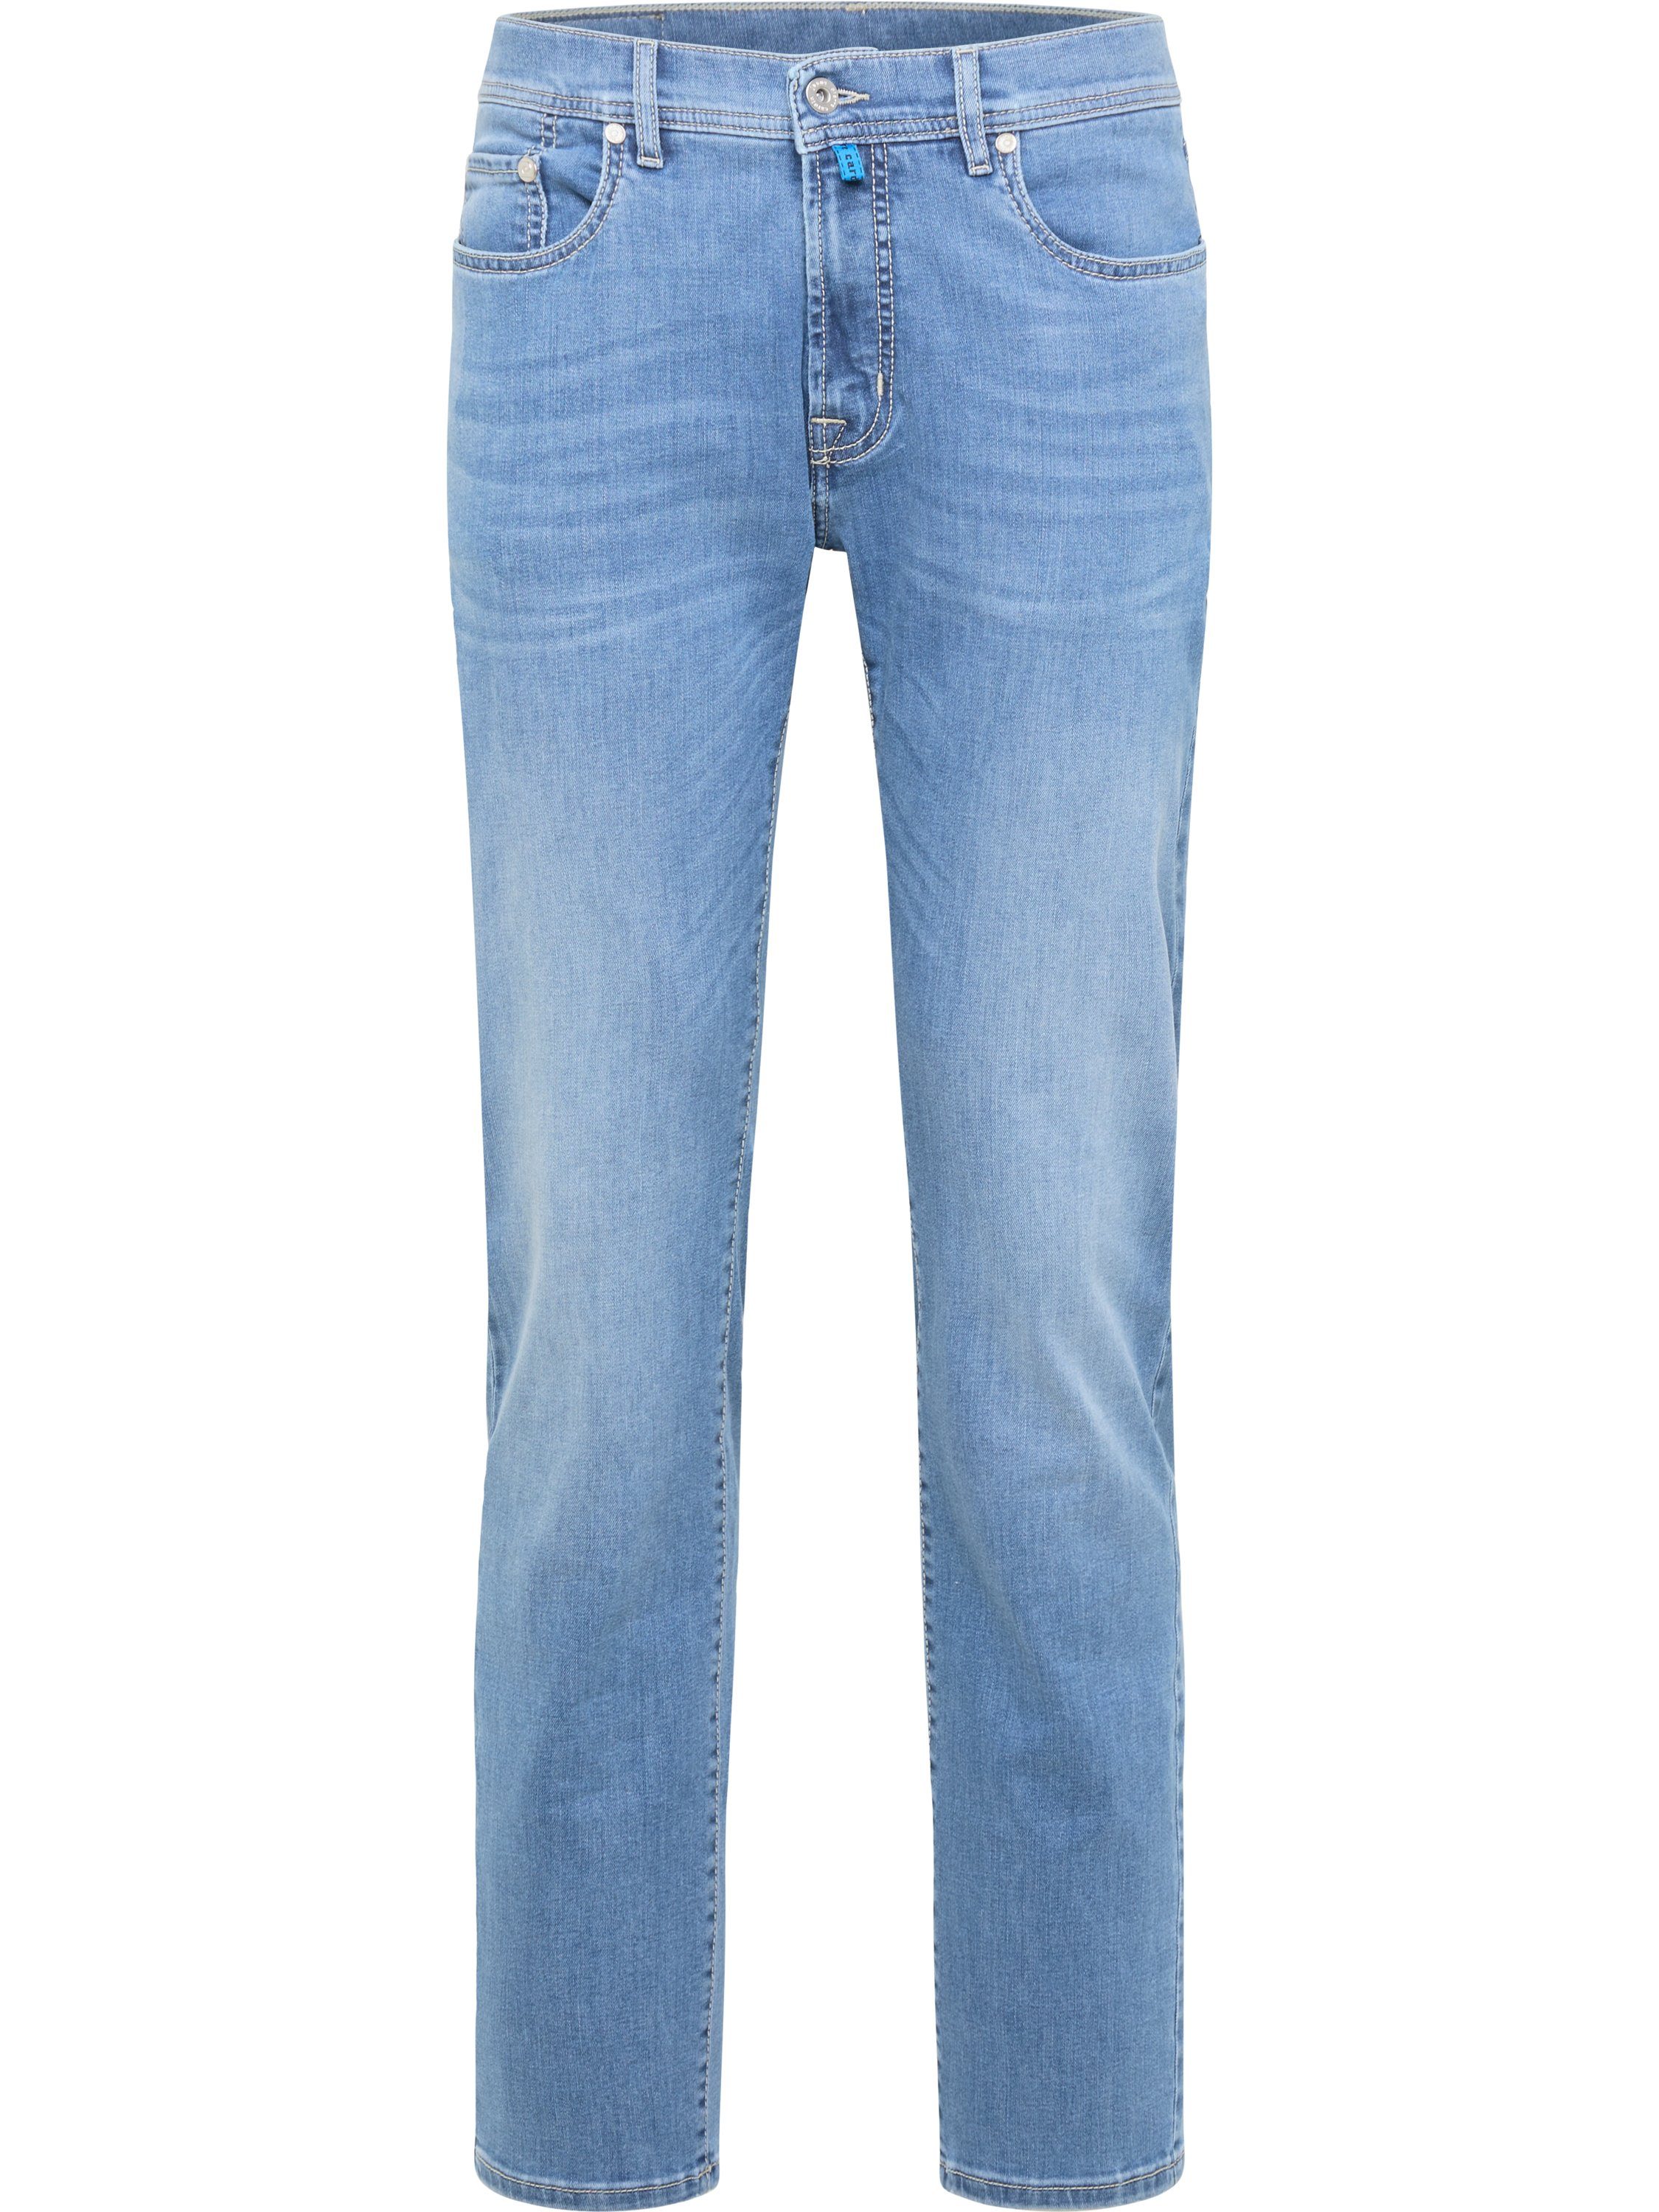 Pierre Cardin 5-Pocket-Jeans PIERRE CARDIN LYON soft vintage blue 38915 7713.02 - Konfektionsgröße/ | Loose Fit Jeans